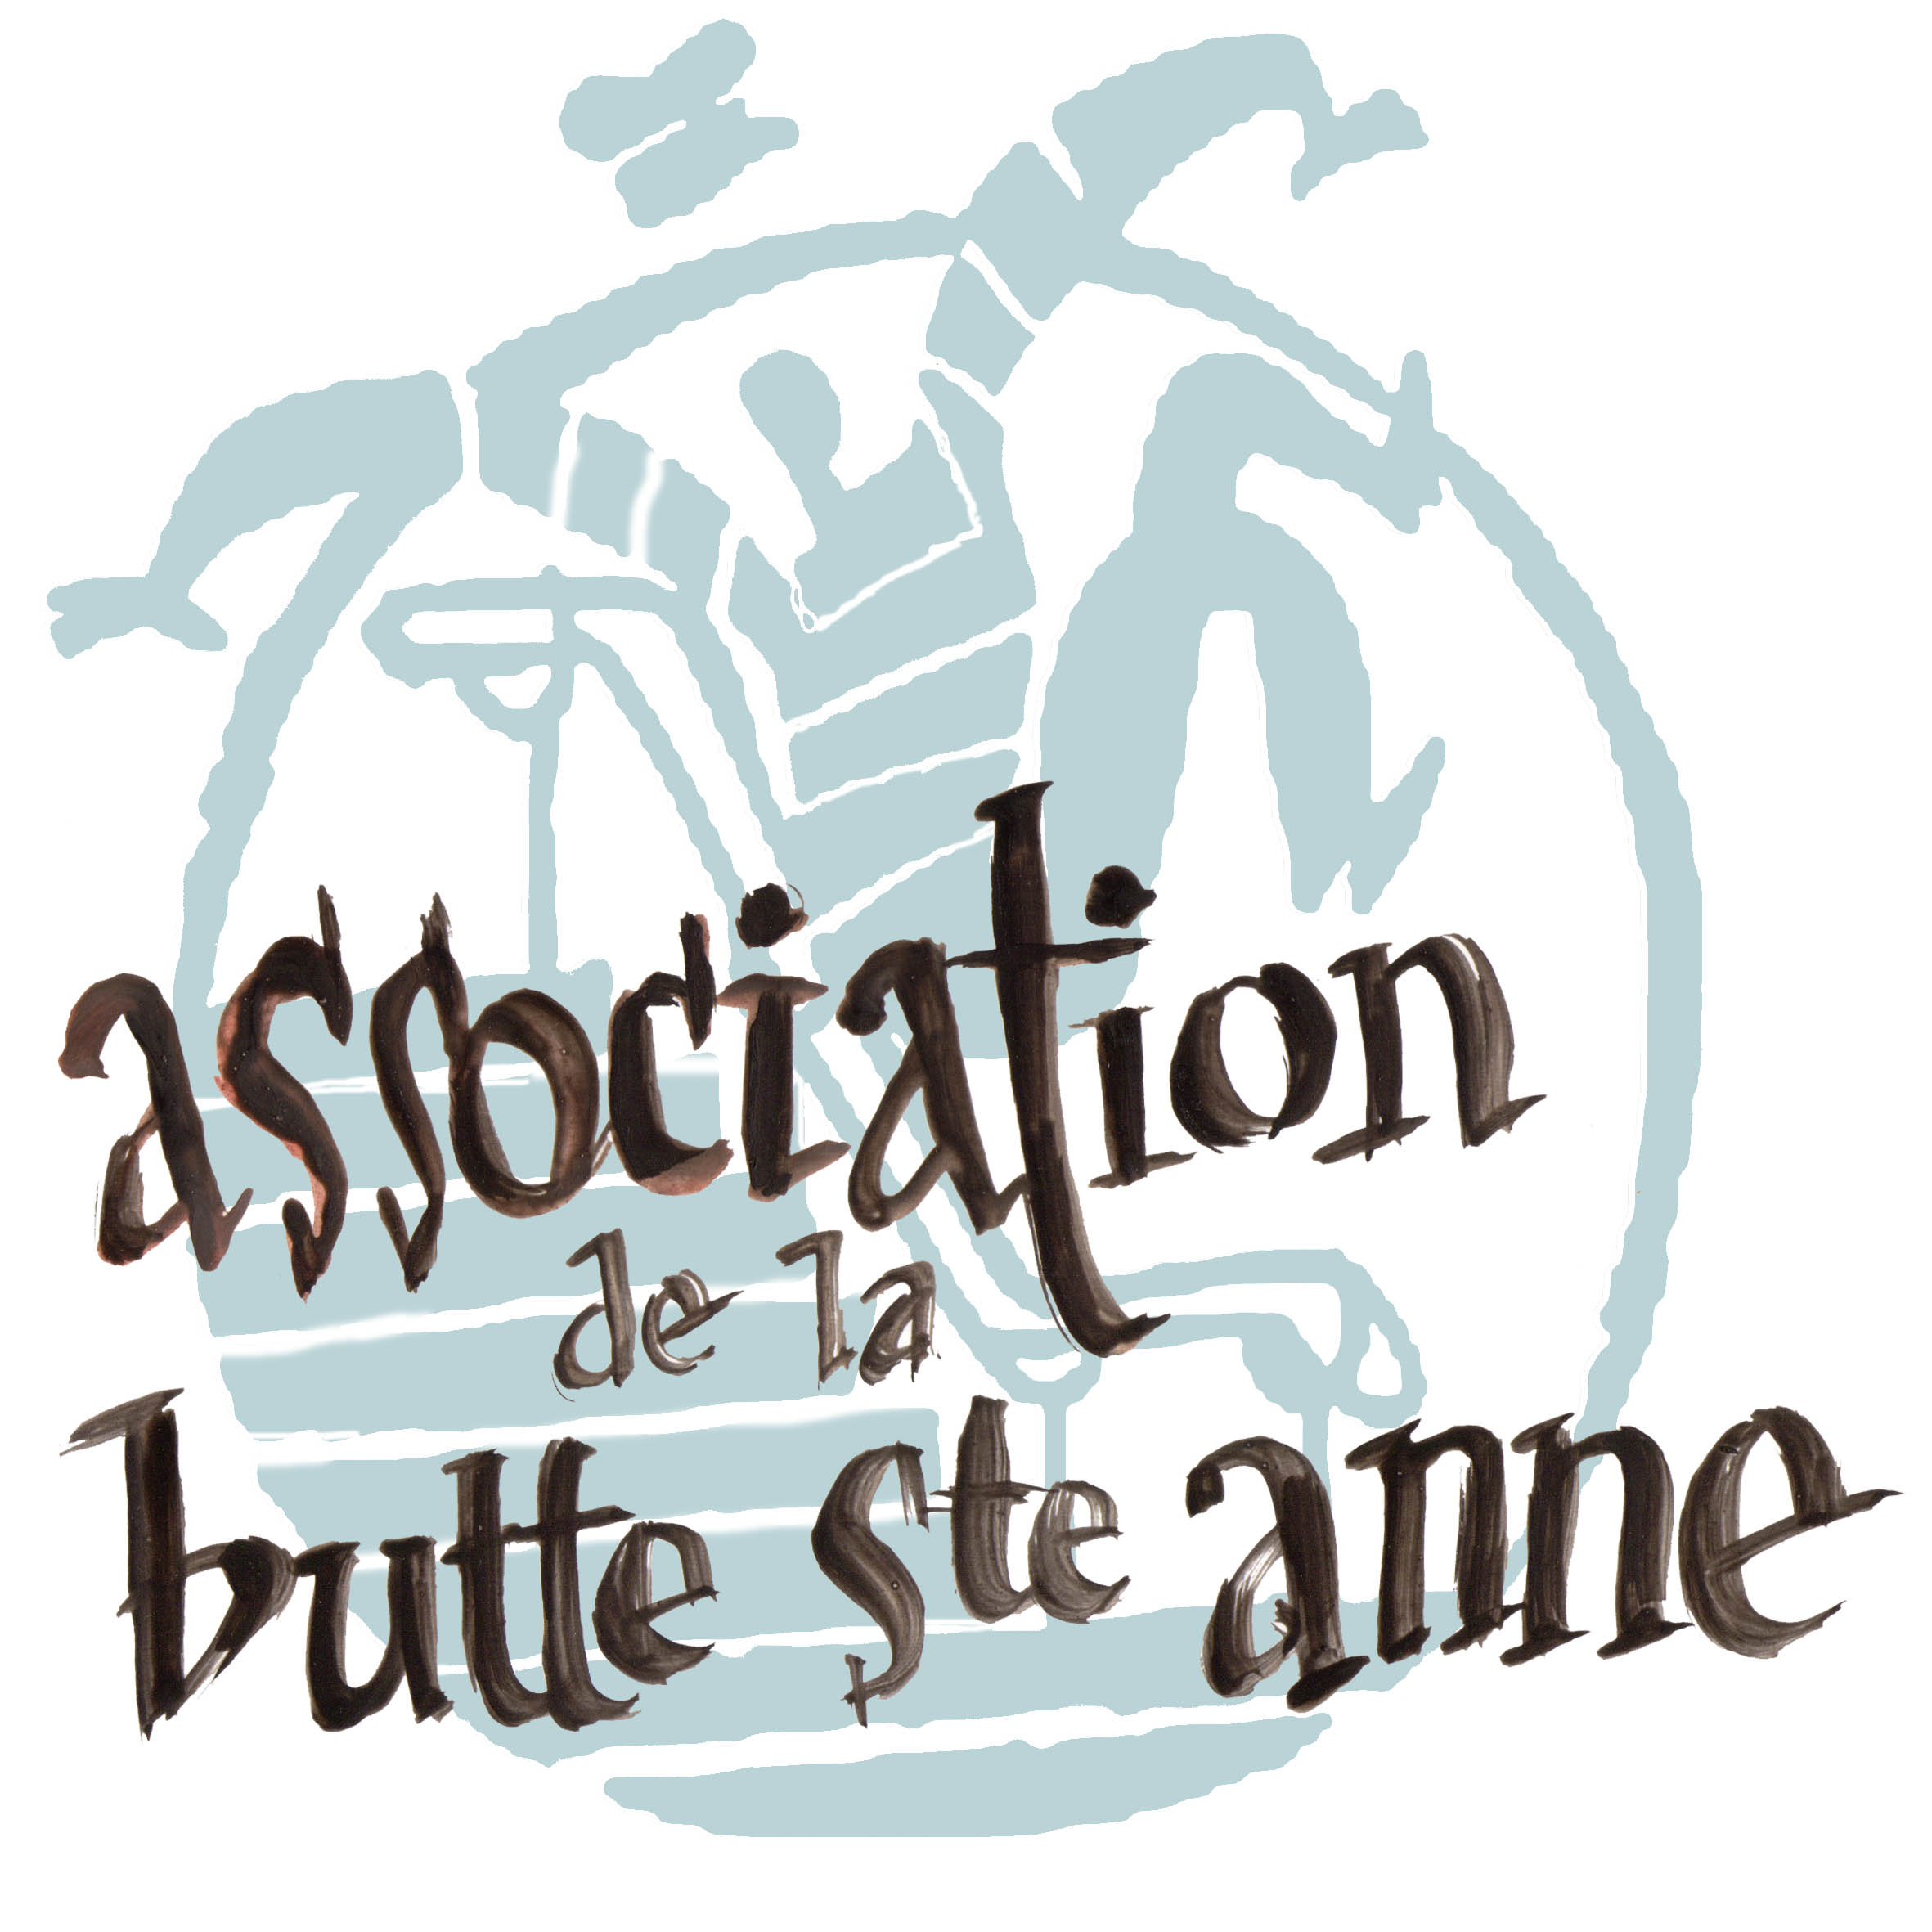 Association de la Butte Saint-Anne (ABSA)